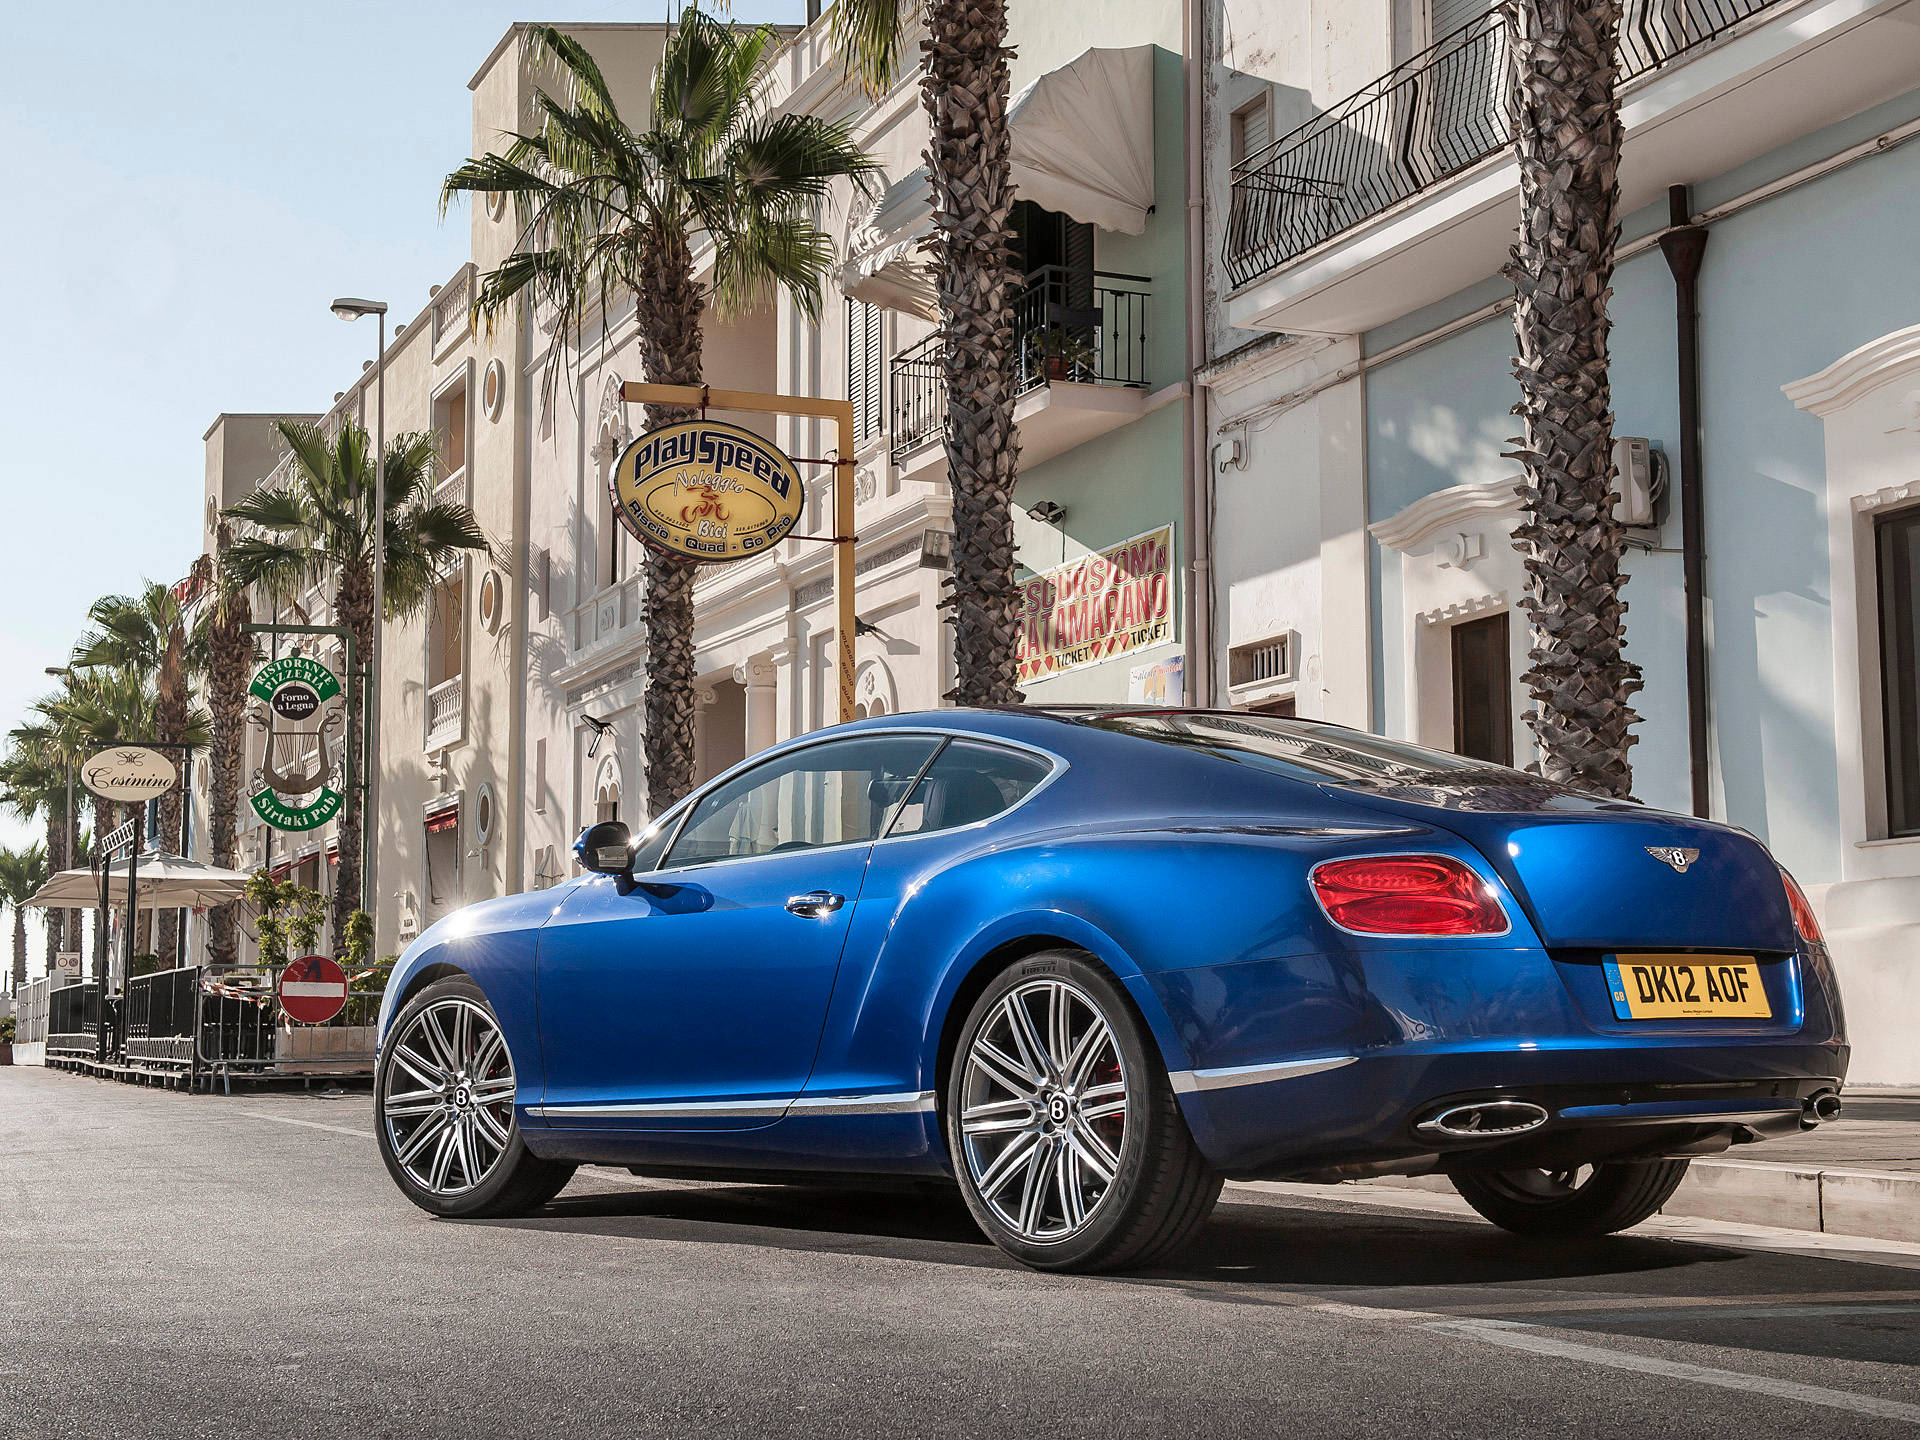 Blue Continental Gt Speed Bentley Hd Wallpaper